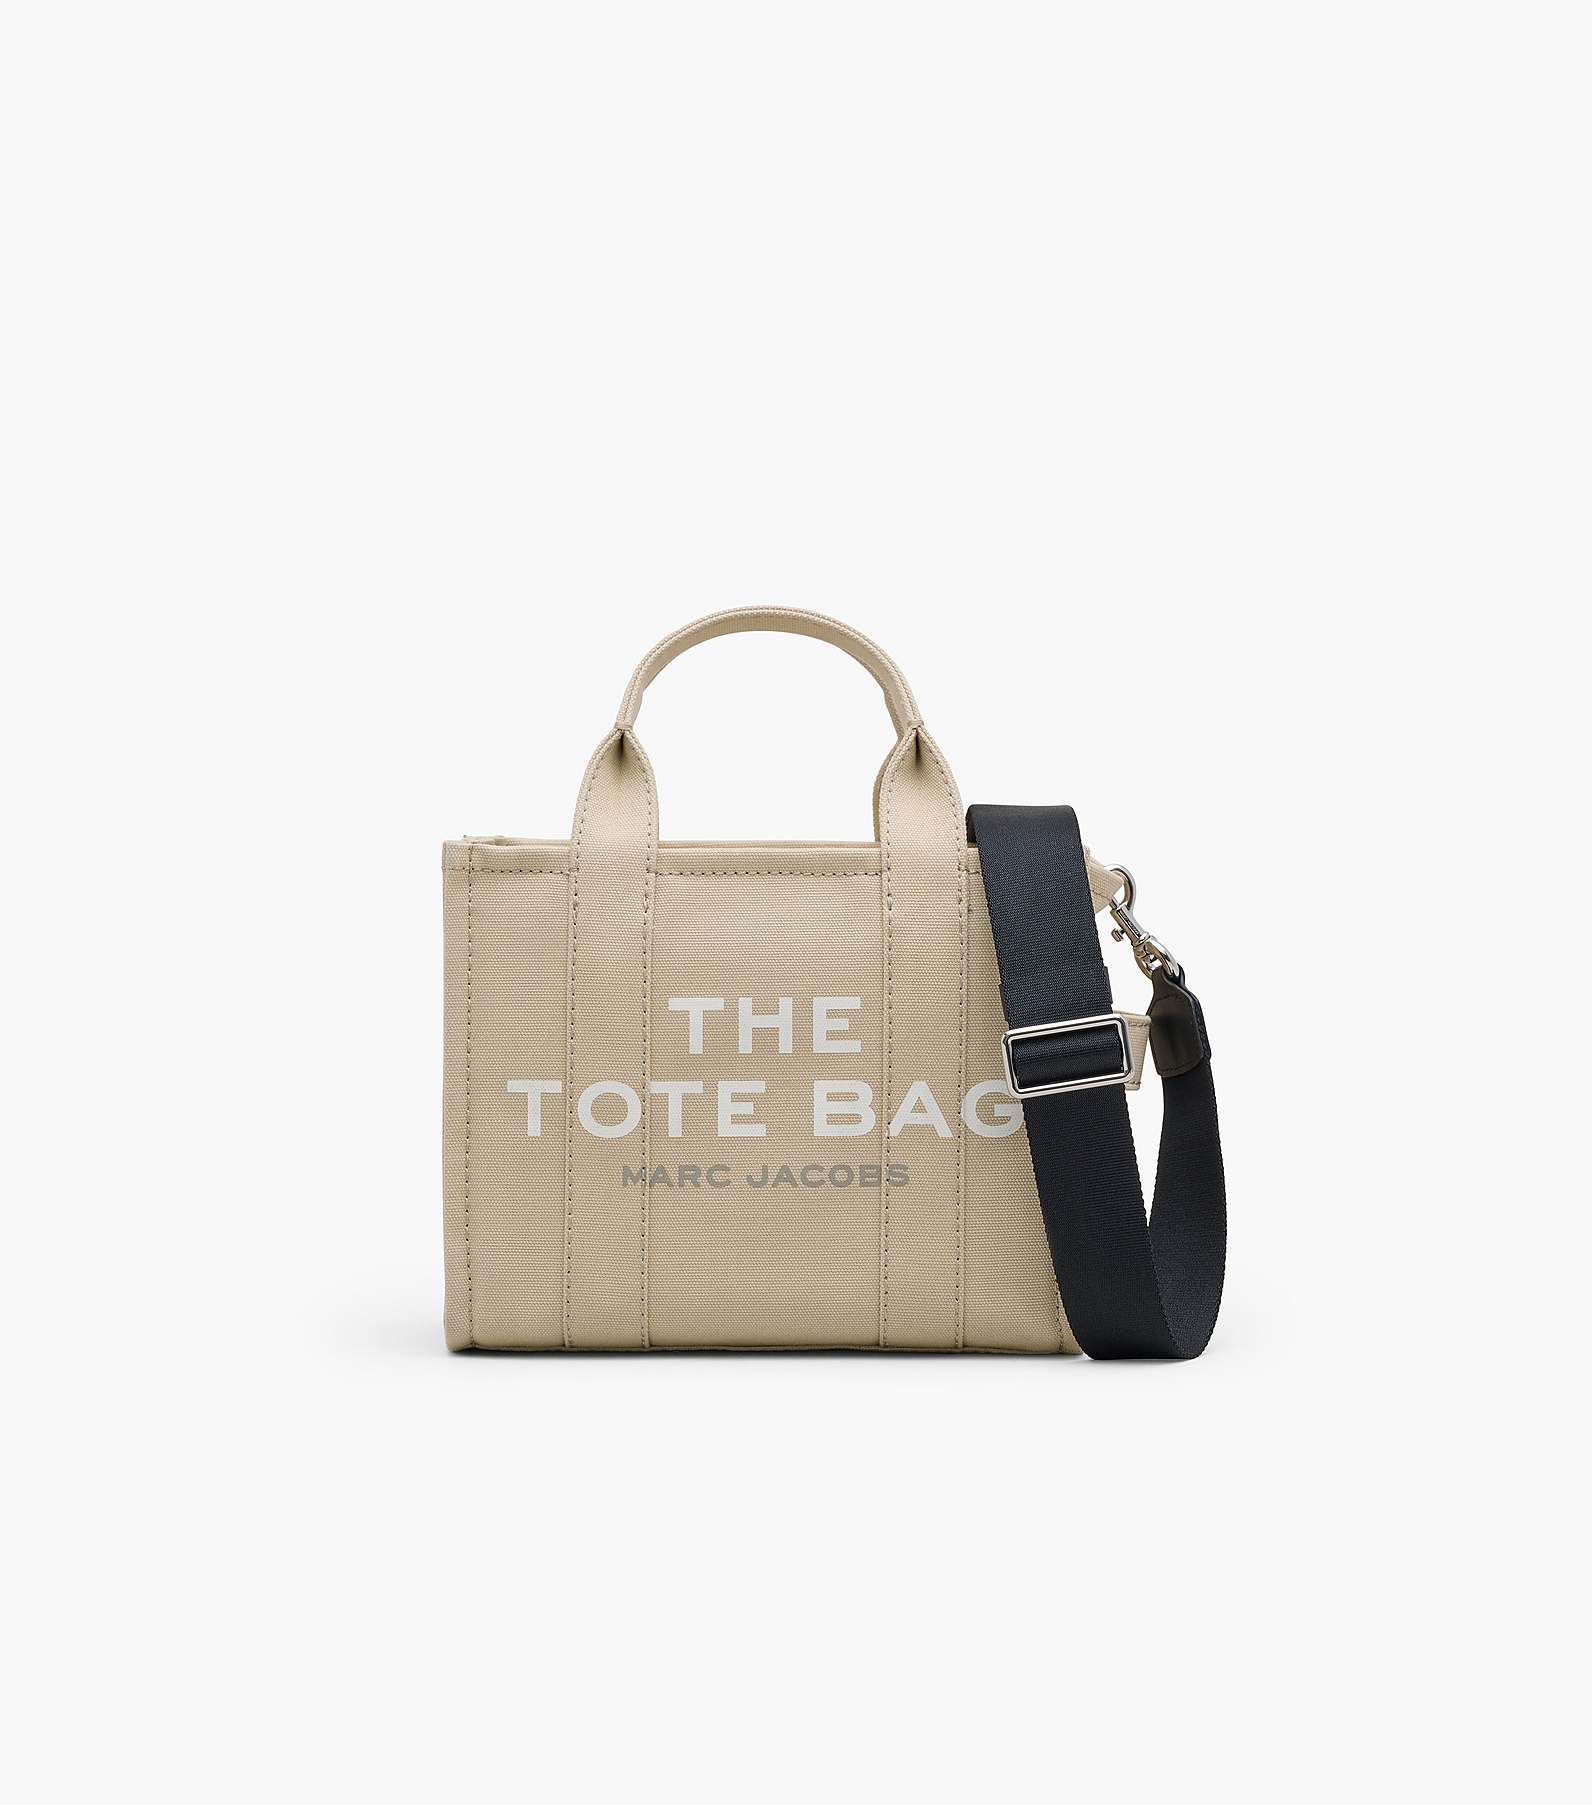 The Mini Tote Bag(The Tote Bag)